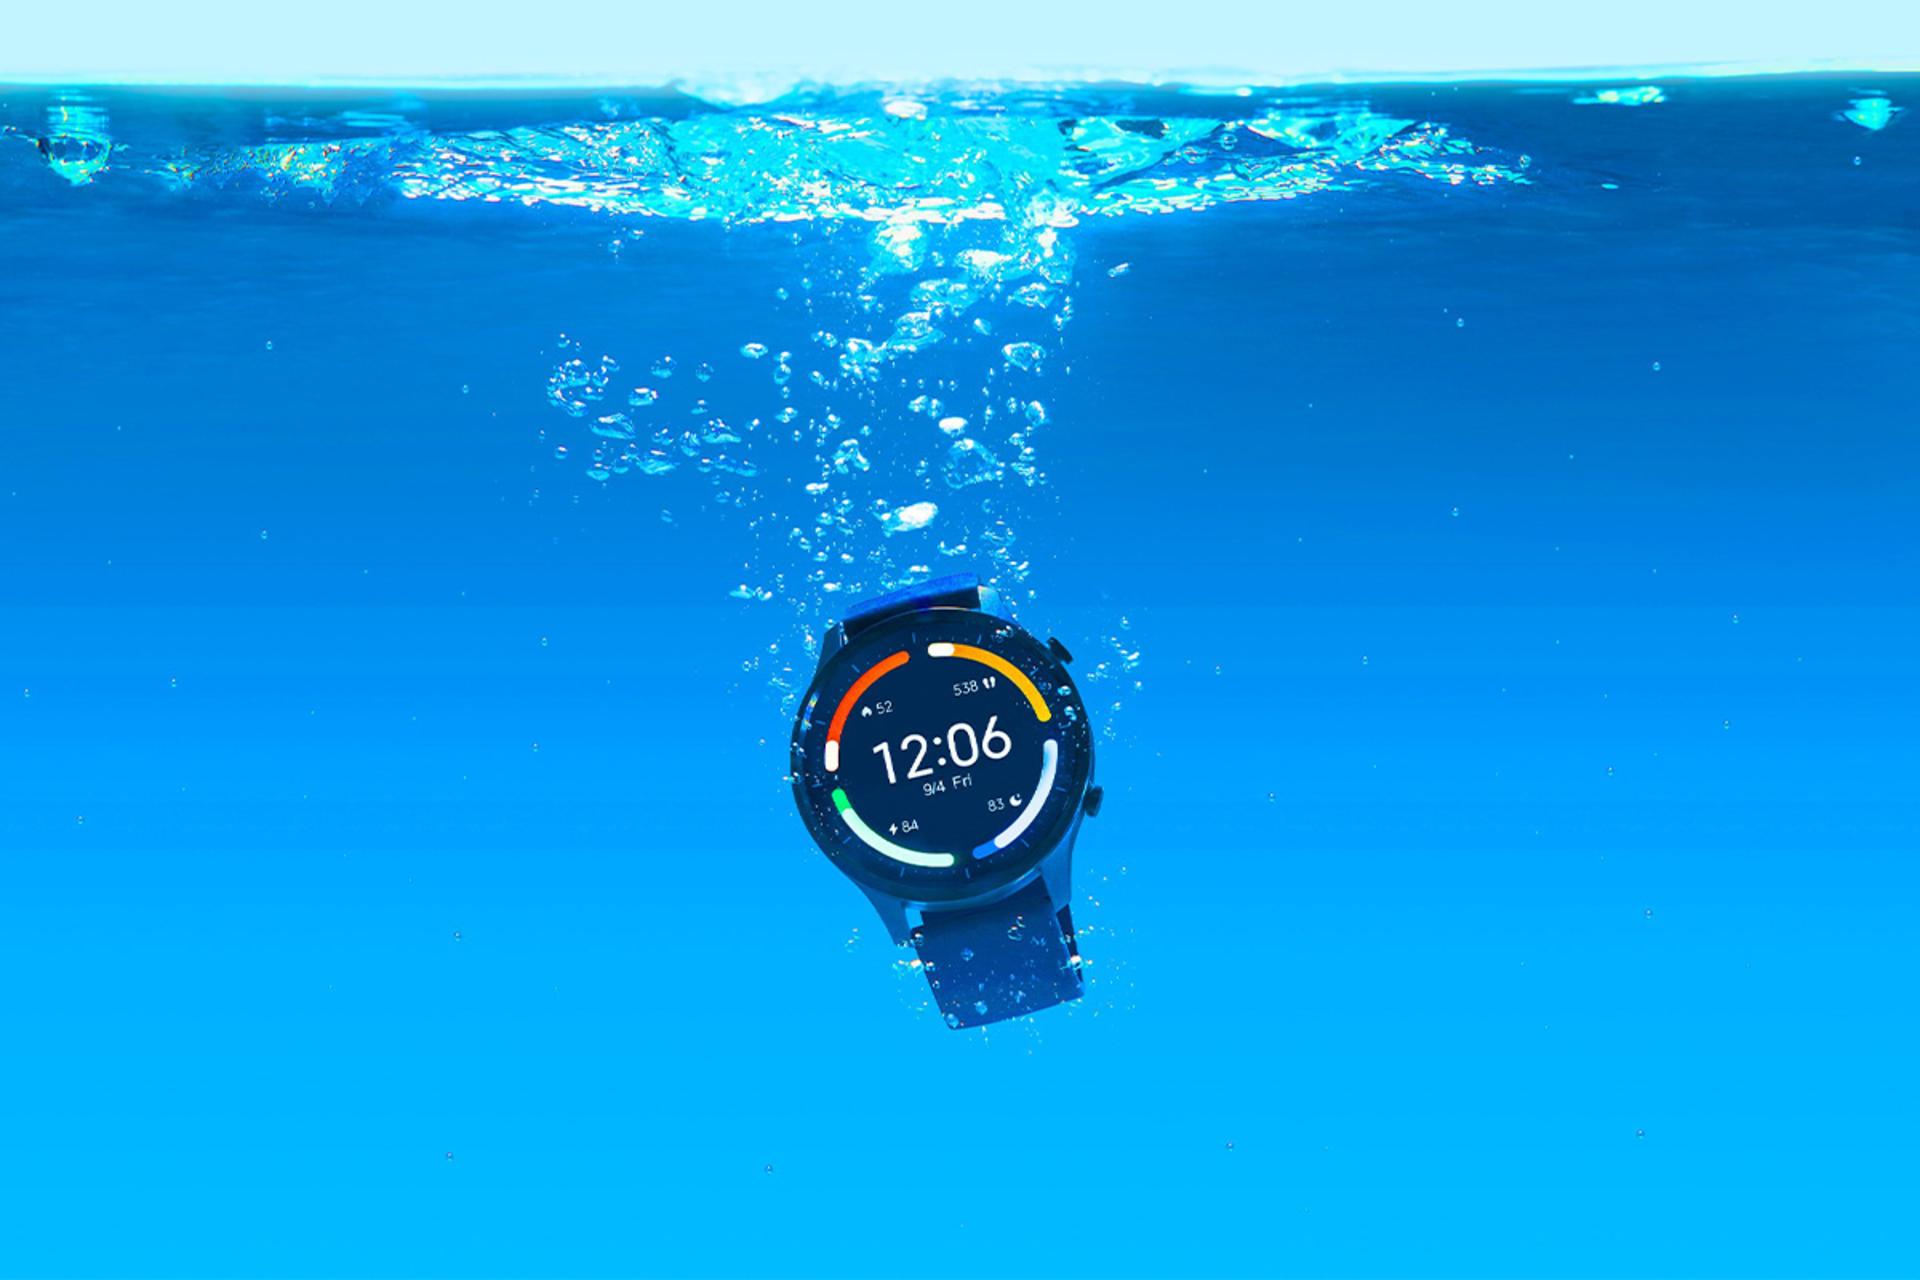 ساعت هوشمند Xiaomi Mi Watch Revolve در آب / شیائومی می واچ ریوالو